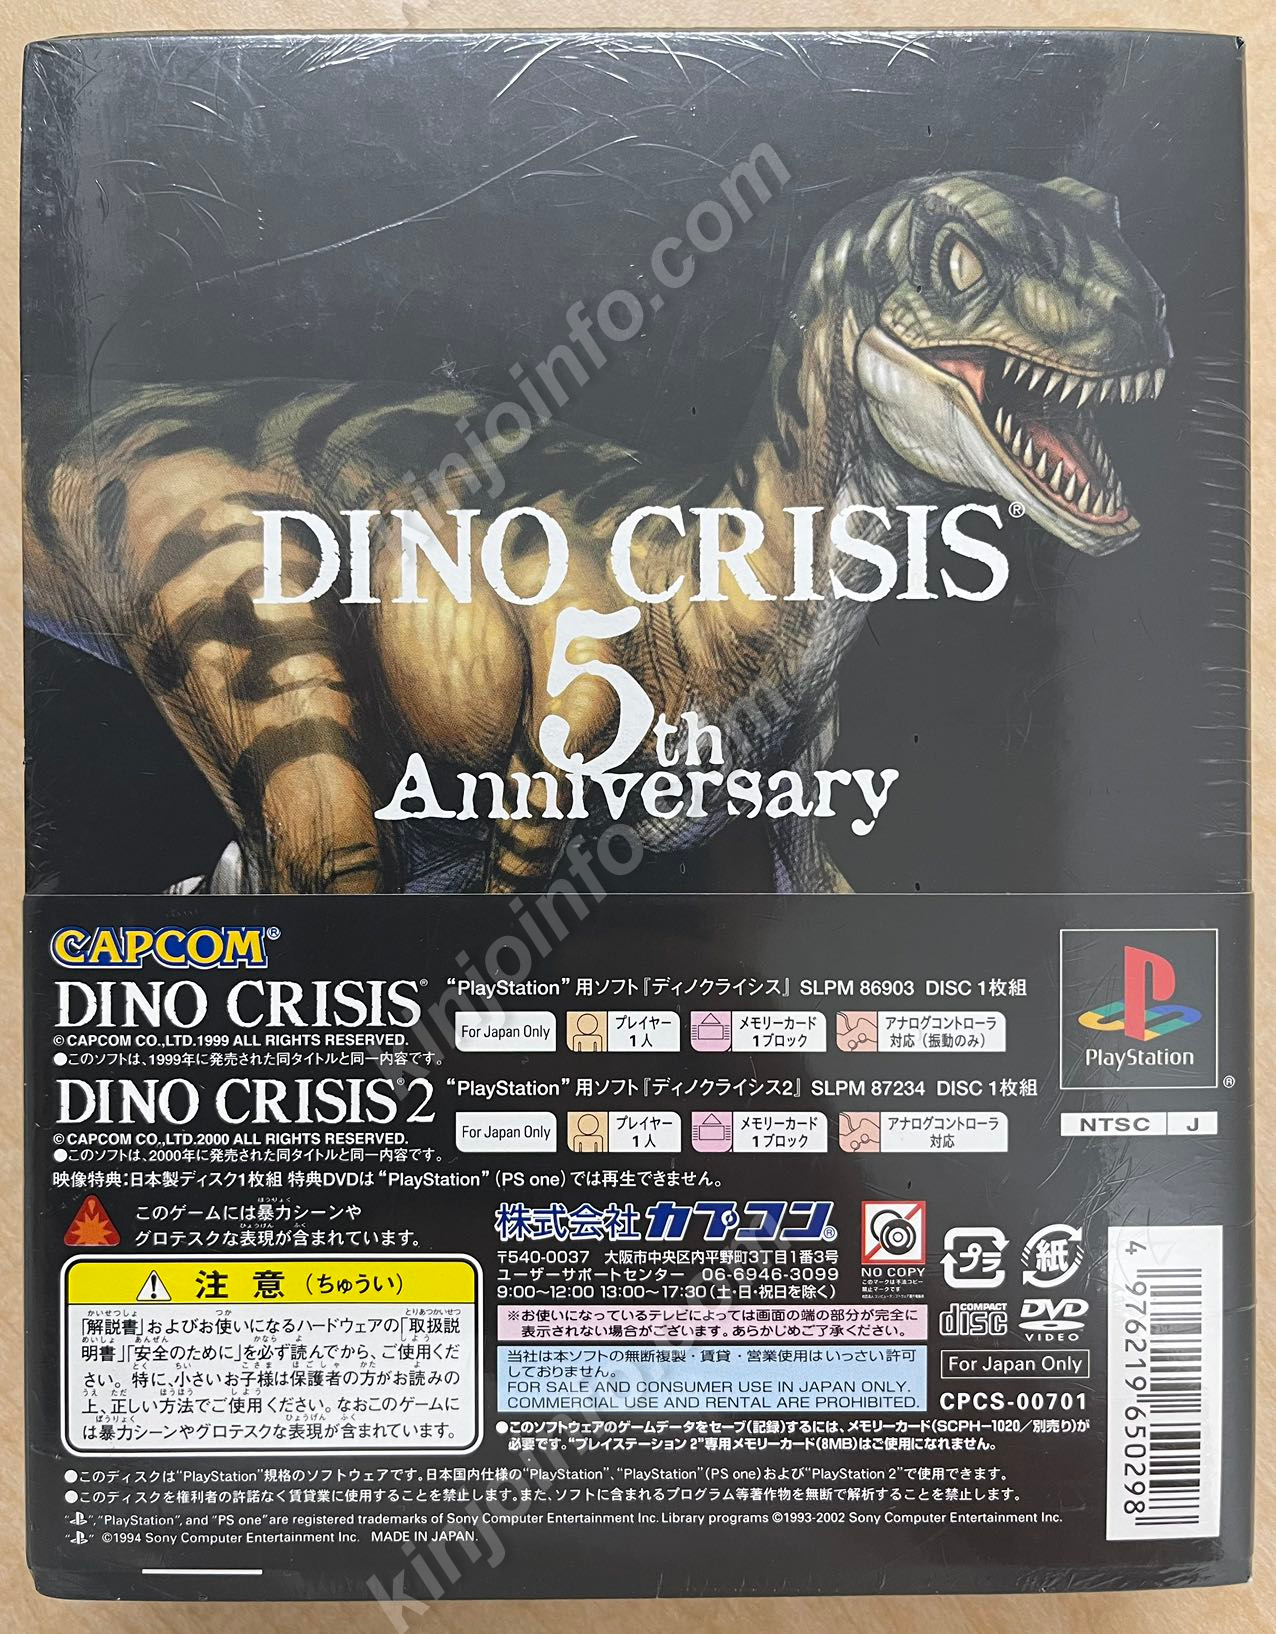 DINO CRISIS 5th Anniversary(ディノクライシス フィフス 